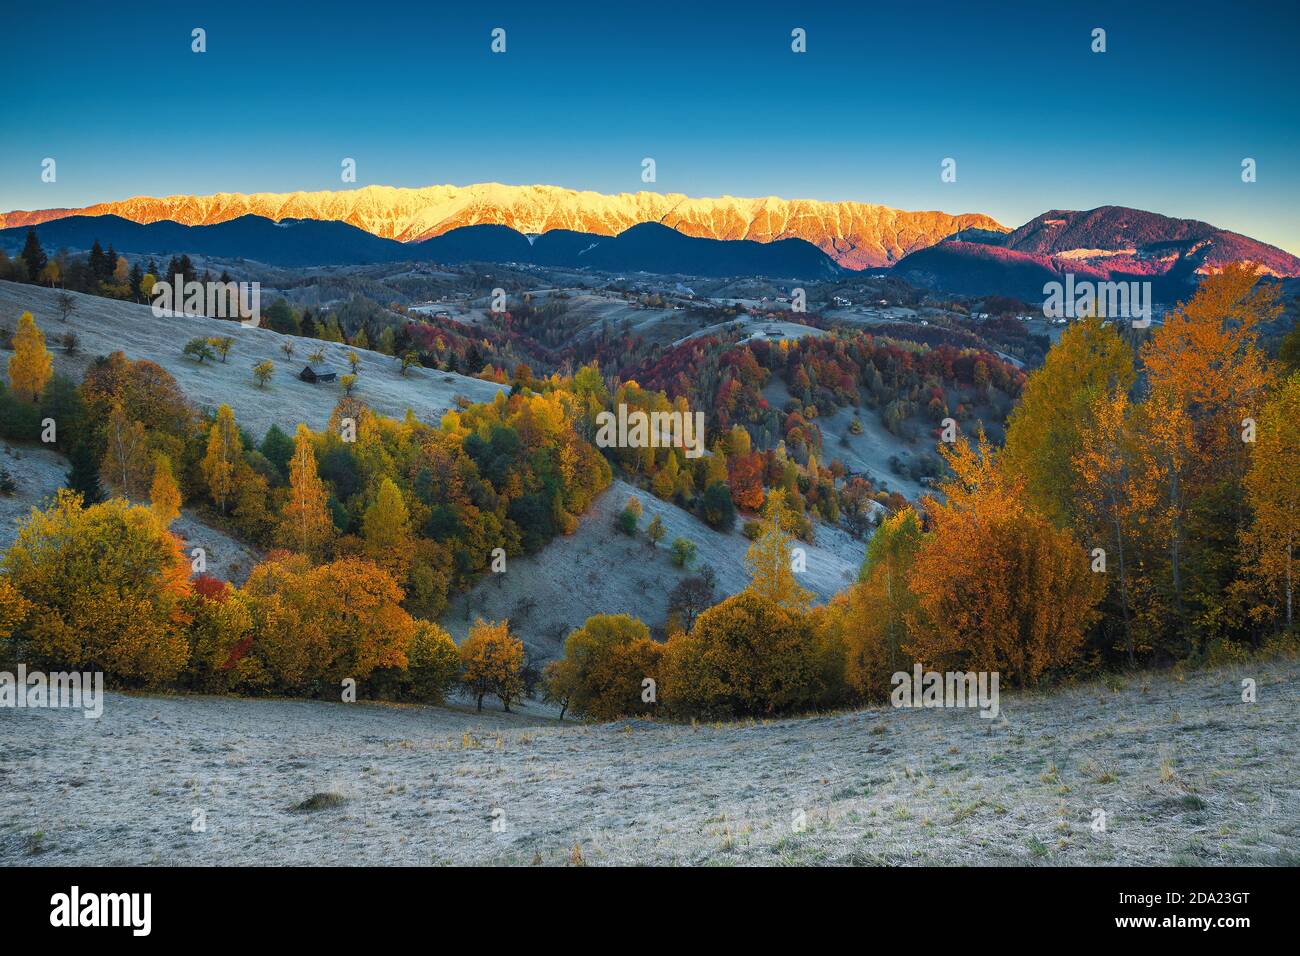 Splendido scenario all'alba dell'autunno con erba dewy e colorati alberi decidui. Maestosa alba e montagne innevate sullo sfondo, Bran, Transilvania, Ro Foto Stock